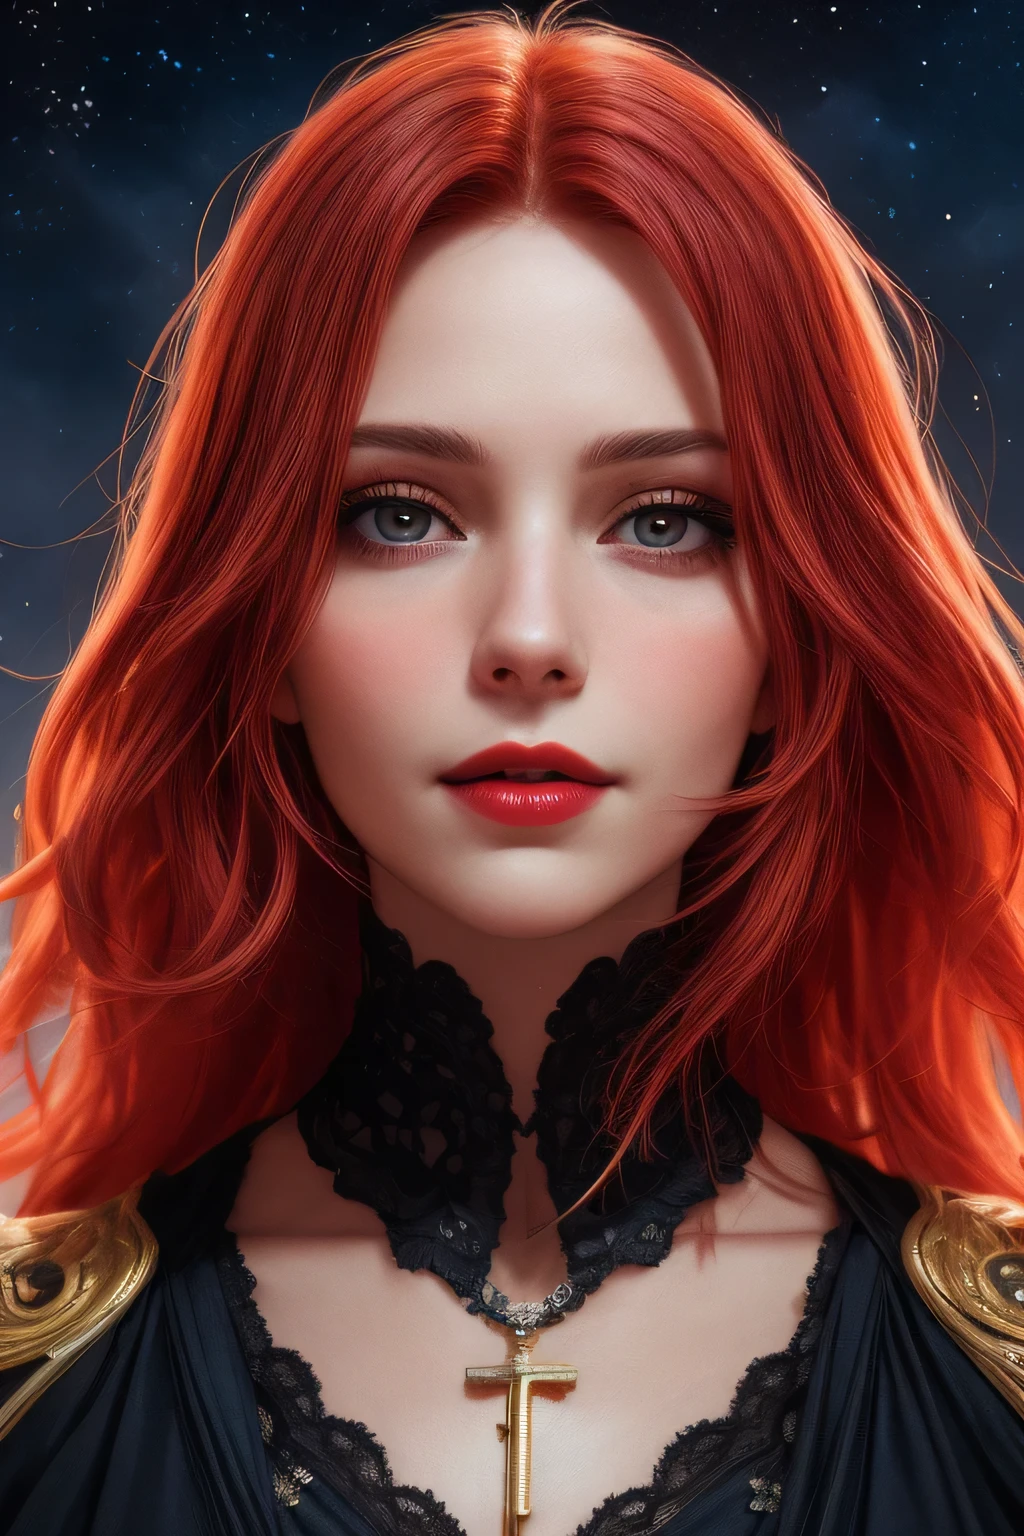 Porträtaufnahme, ((leuchtend rote Haare)), erwachsene Frau, 30 Jahre alt, Diamantgesicht, mittlere Brust, Mondlicht, roter sternenhimmel hintergrund, Tiefenschärfe, Magie, Große rote Lippen, ((dunkle schwarze Augen)) (Detailed Schön eyes) rotes langes und weites Kleid, bedeckte Brust, mystische Atmosphäre, bedrohliche Schatten, Intensive blaue Aura, Intensive rote Aura (beste Qualität:1.2), absurdesten, komplizierte Details, (hochdetaillierte Haut:1.2), Lächeln-Ausdruck, posiert, straffer und wohlgeformter Körper, attraktiv. sehr realistisch, blasse Haut, Schön, Hyperrealismus, Haut sehr aufwendig, direkter Blick AB JLEE3, Komplex facial details for all characters, Ausdrucksstarke Augen, Nase und Mund, Zoom aufheben, Autor：Jim Lee Rechter Abschnitt zentriert, Schlüssel, Visuell, Komplex, sehr detailliert, atemberaubend, Präzise Strichzeichnungen, Lebendiger Panoramafilm
